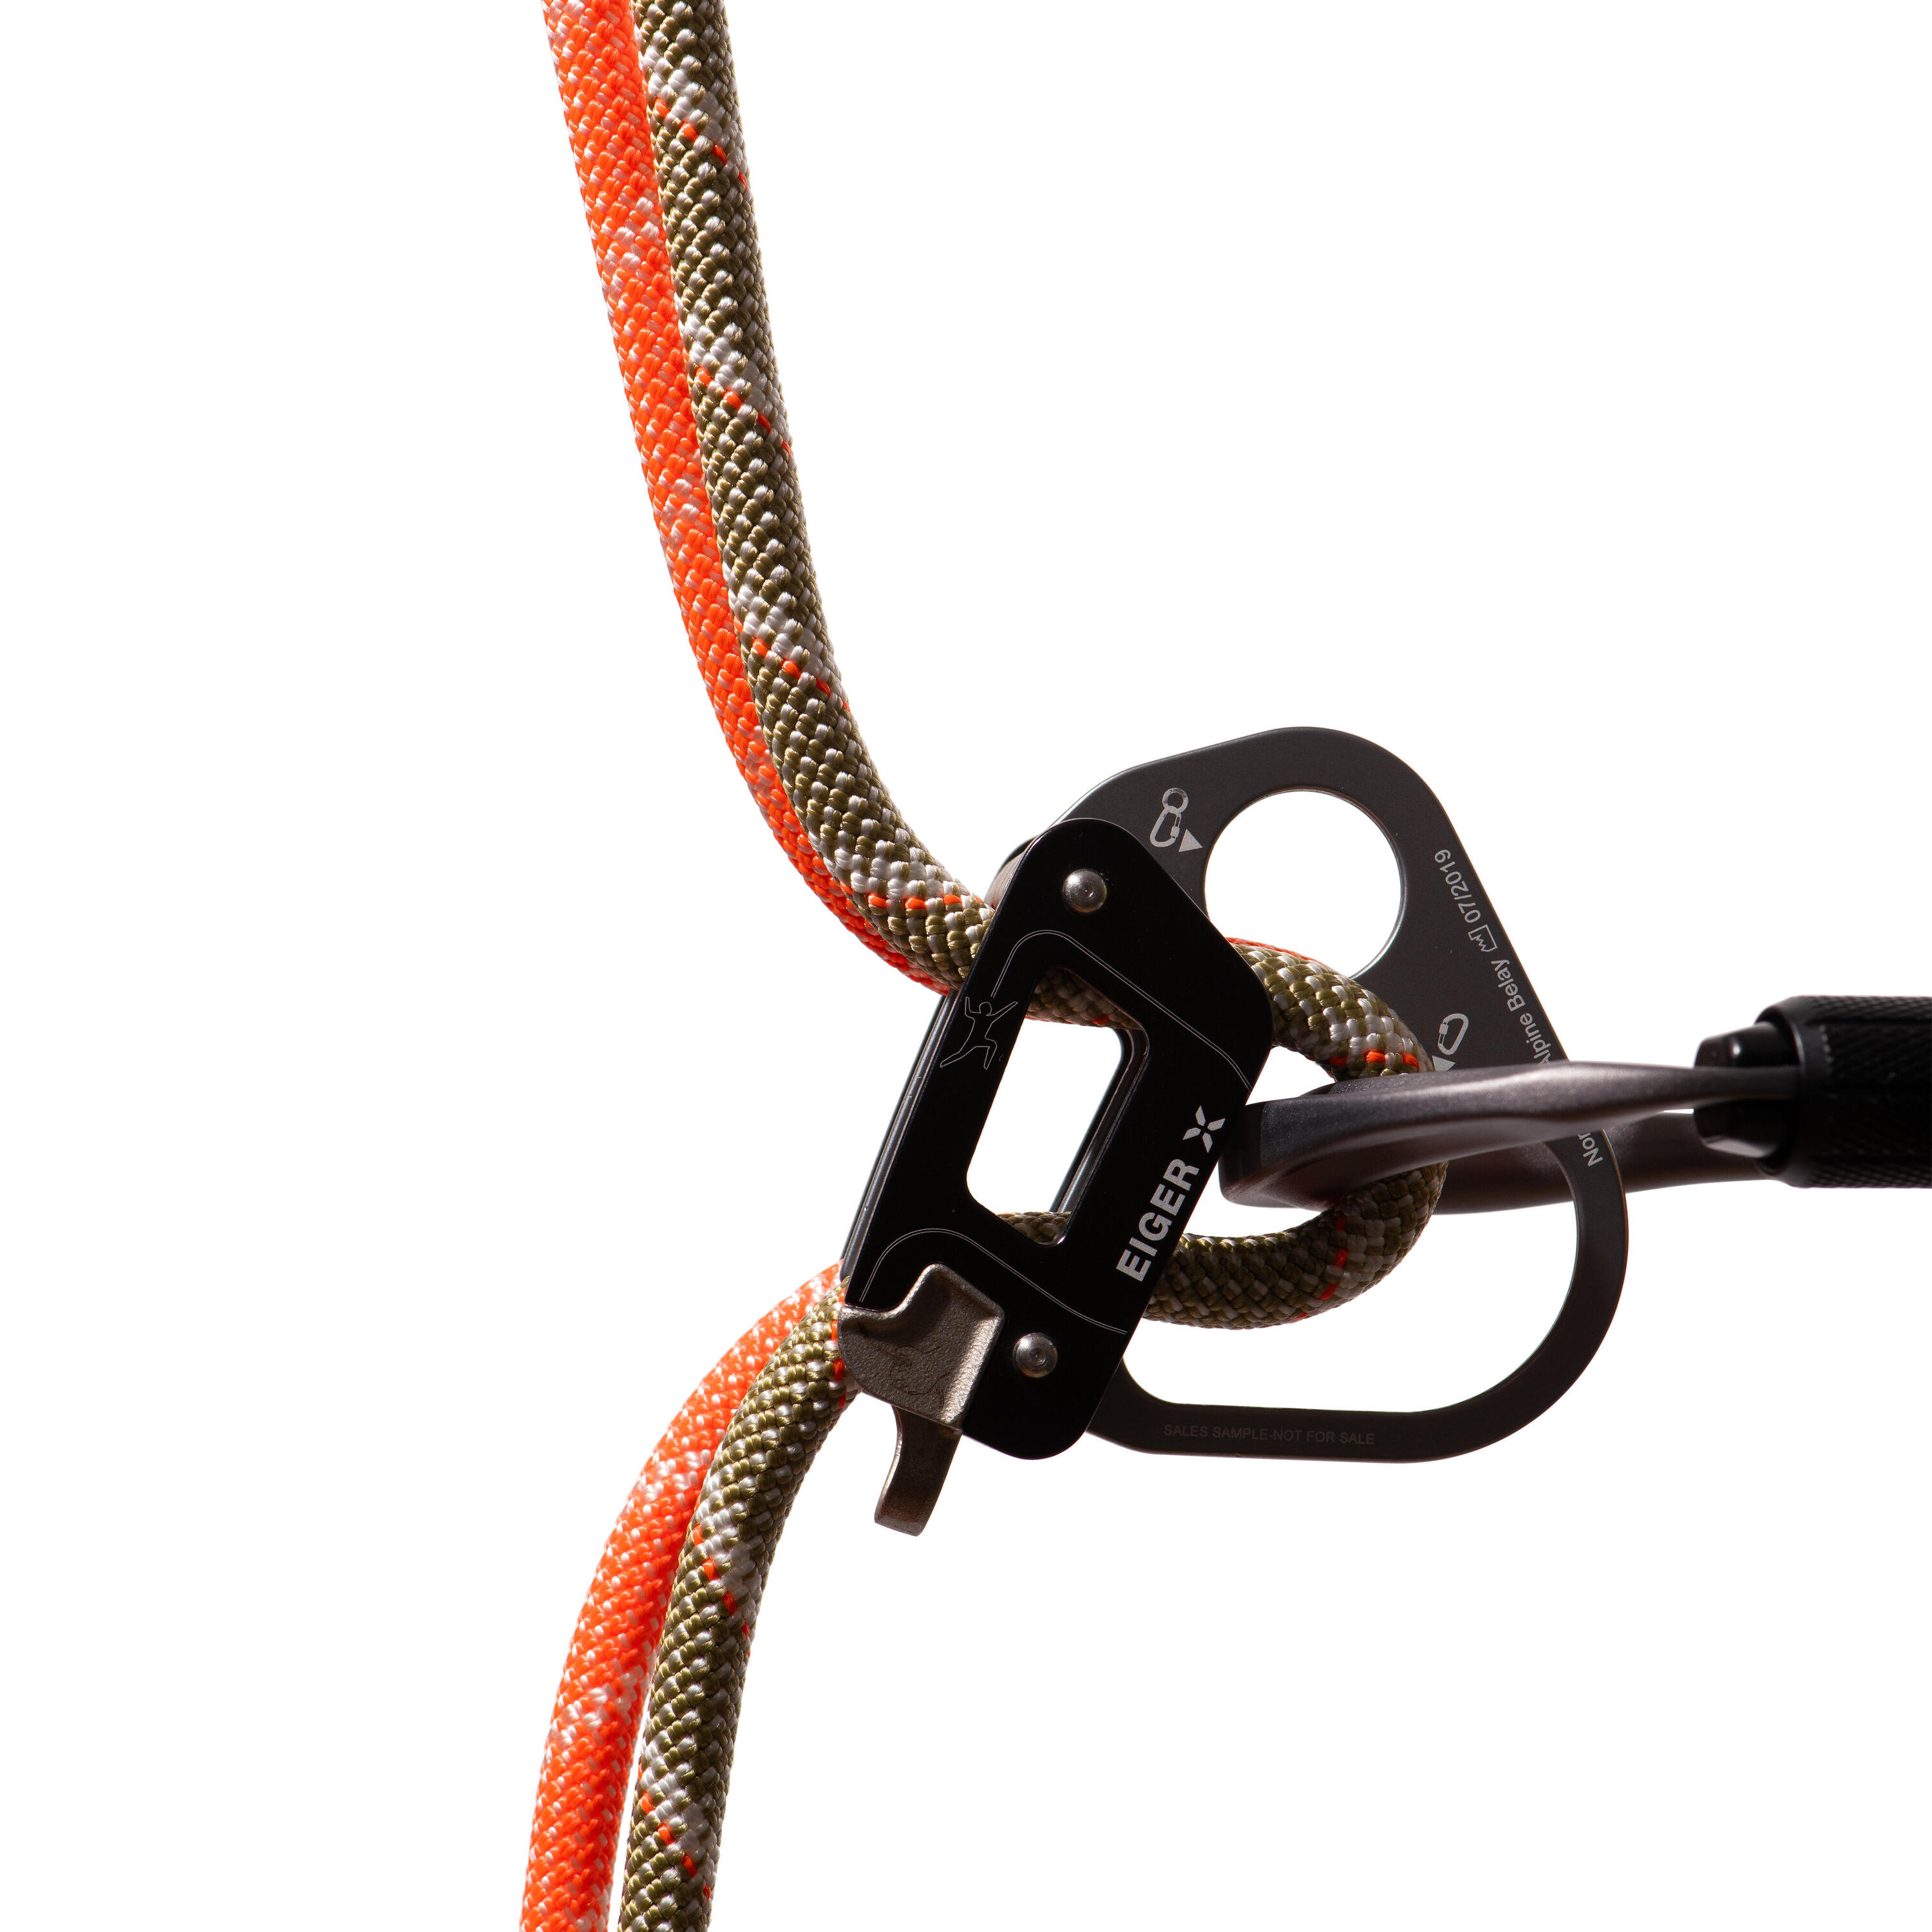 Alpine Classic Half Rope 8.0 mm x 50m - Orange 4/4